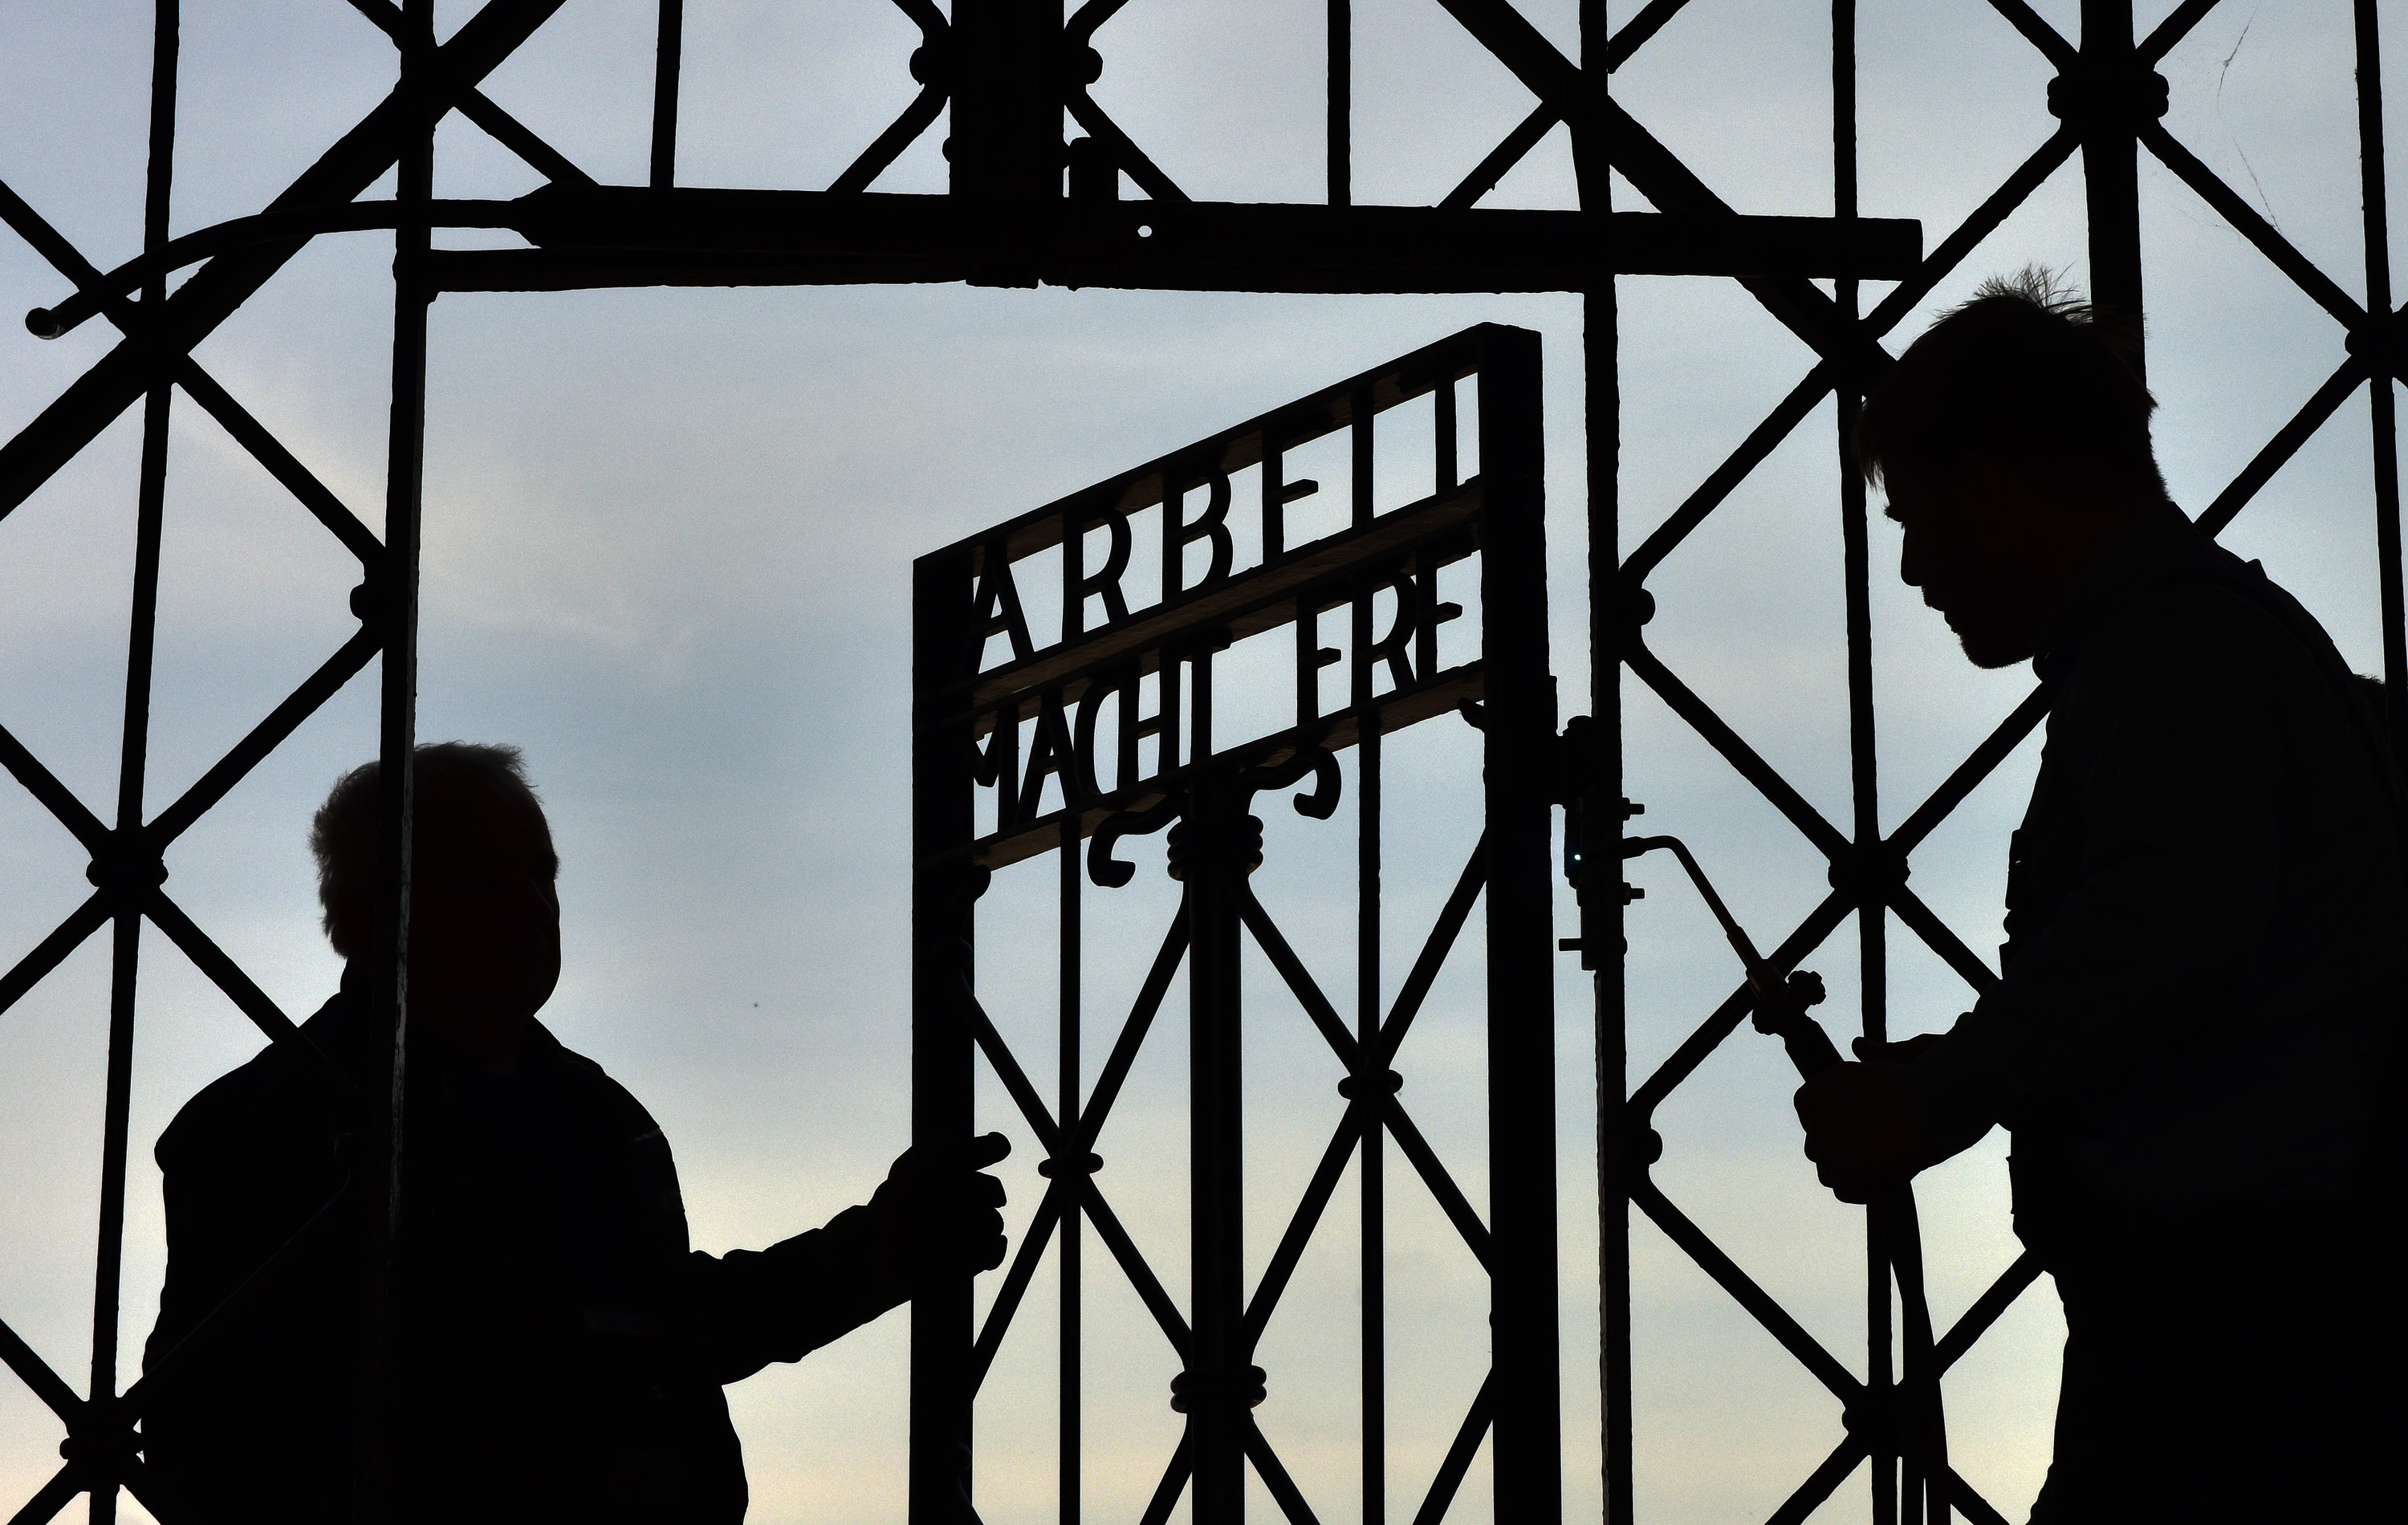 Zwei Männer öffnen ein Tor mit der Aufschrift "Arbeit macht frei". | dpa